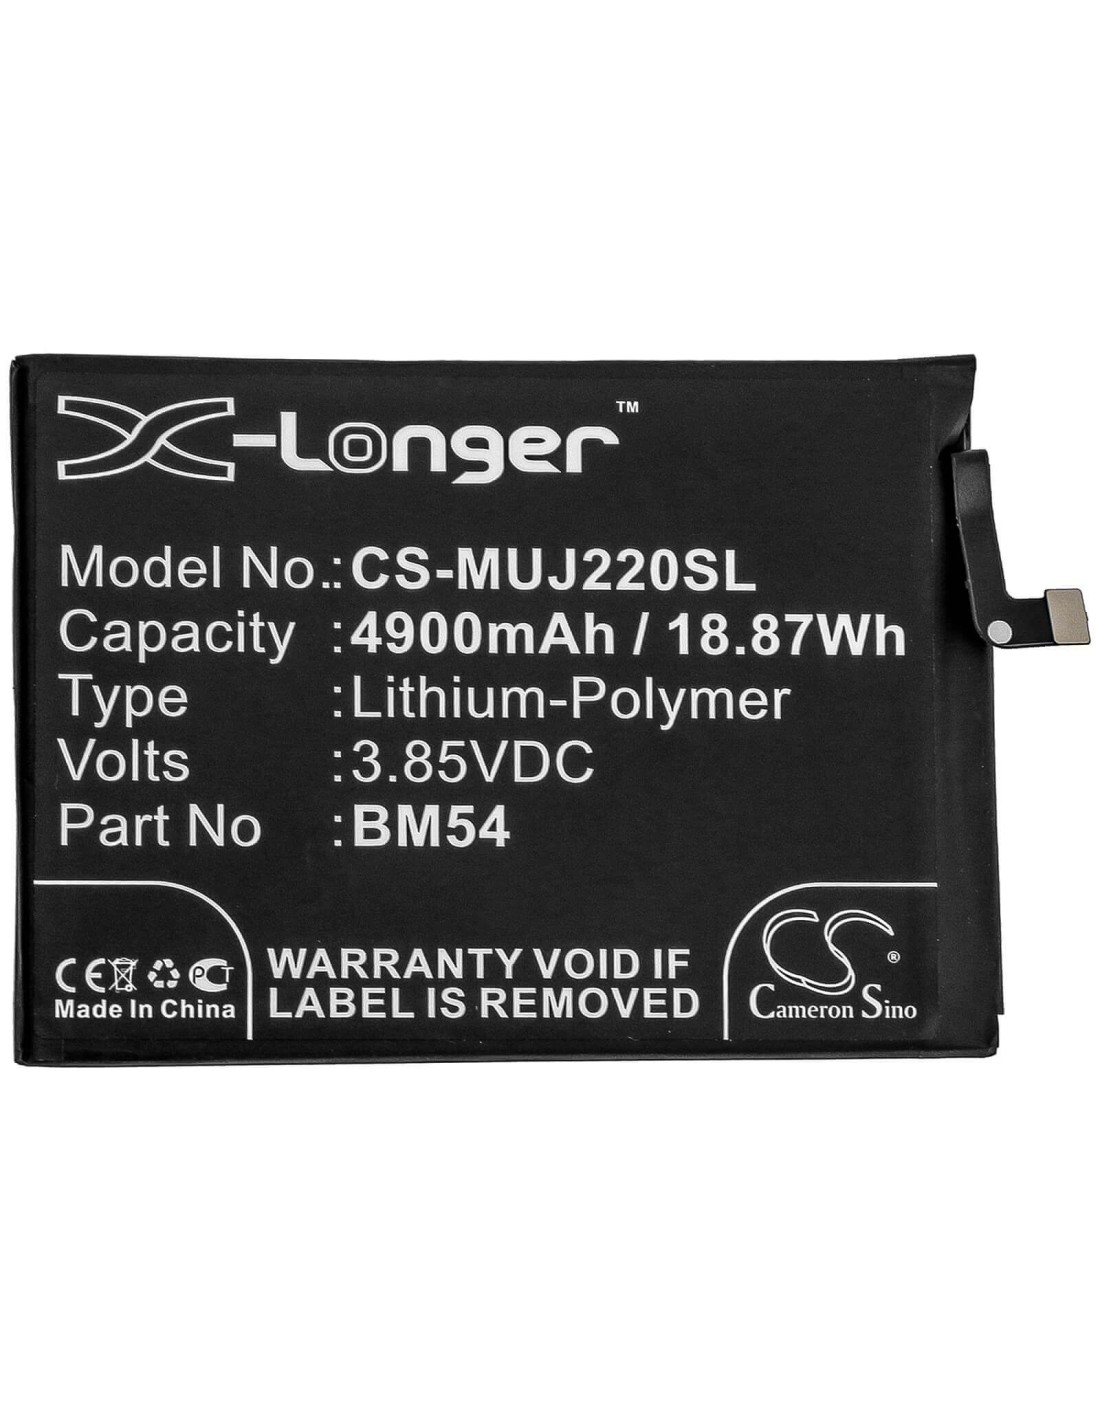 Battery for Redmi, A001xm, M2007j22c, M2007j22g 3.85V, 4900mAh - 18.87Wh